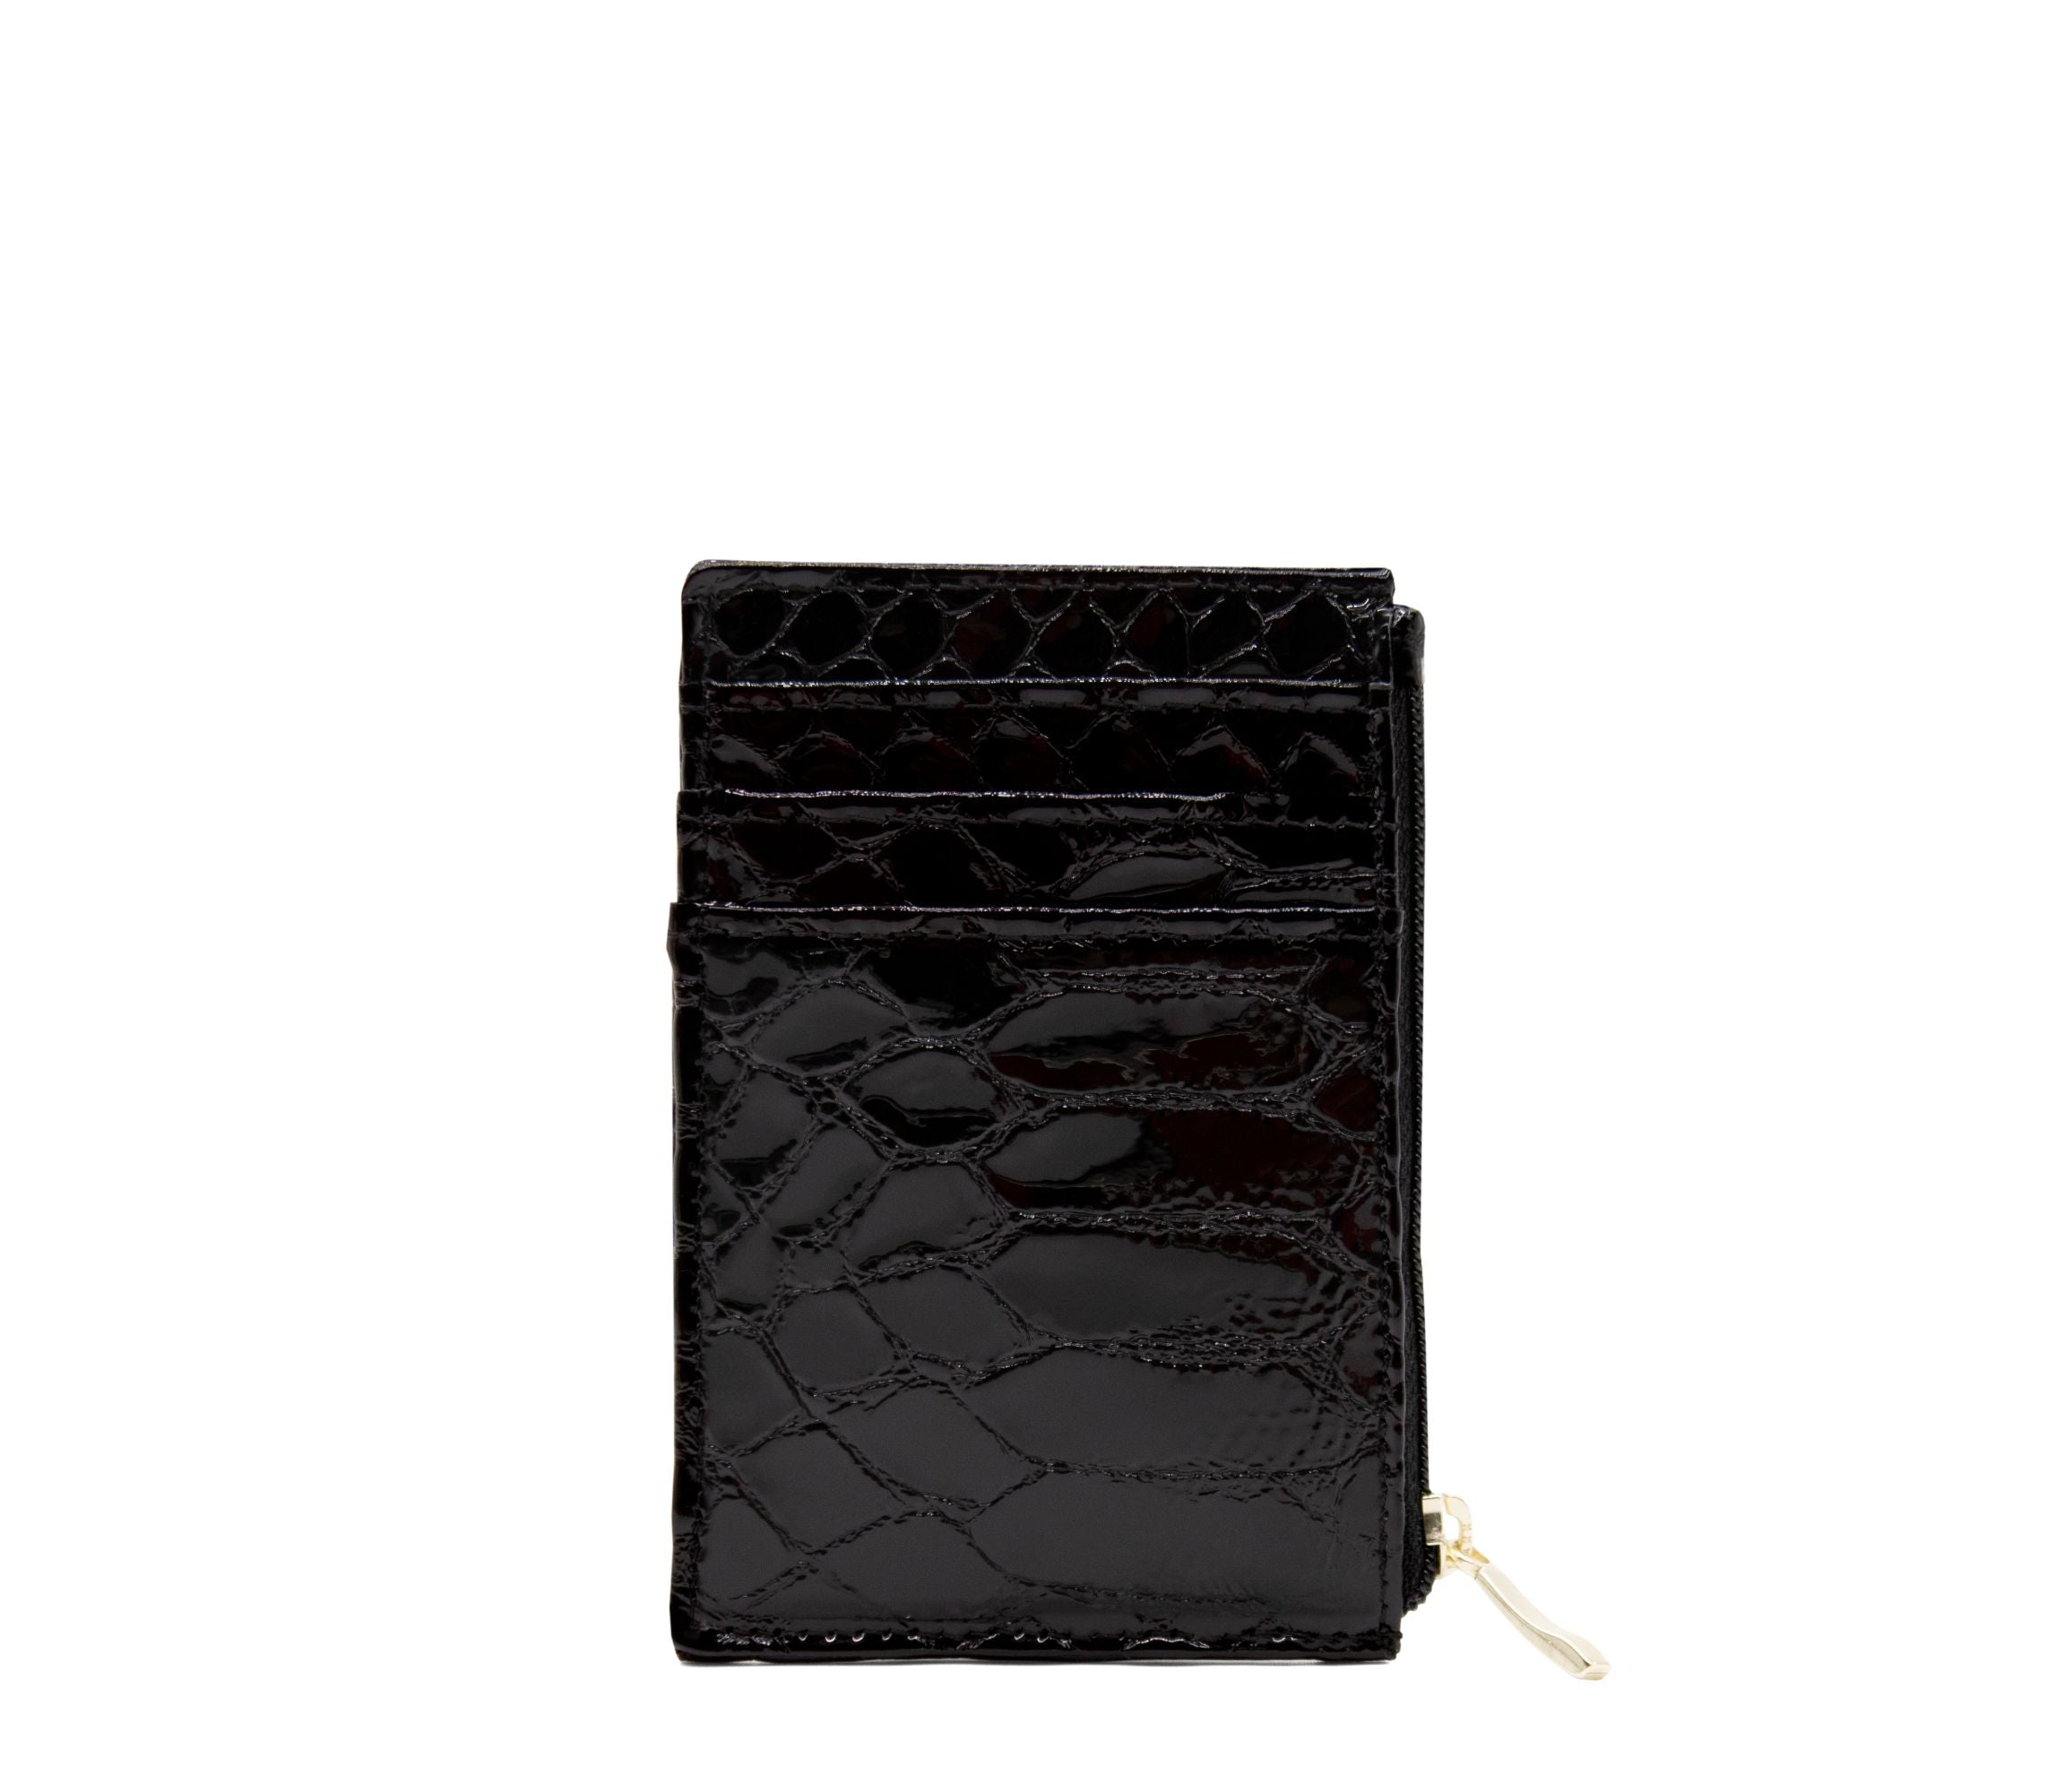 Cavalinho Gallop Patent Leather Card Holder Wallet for Women SKU 28170573.01 #color_Black